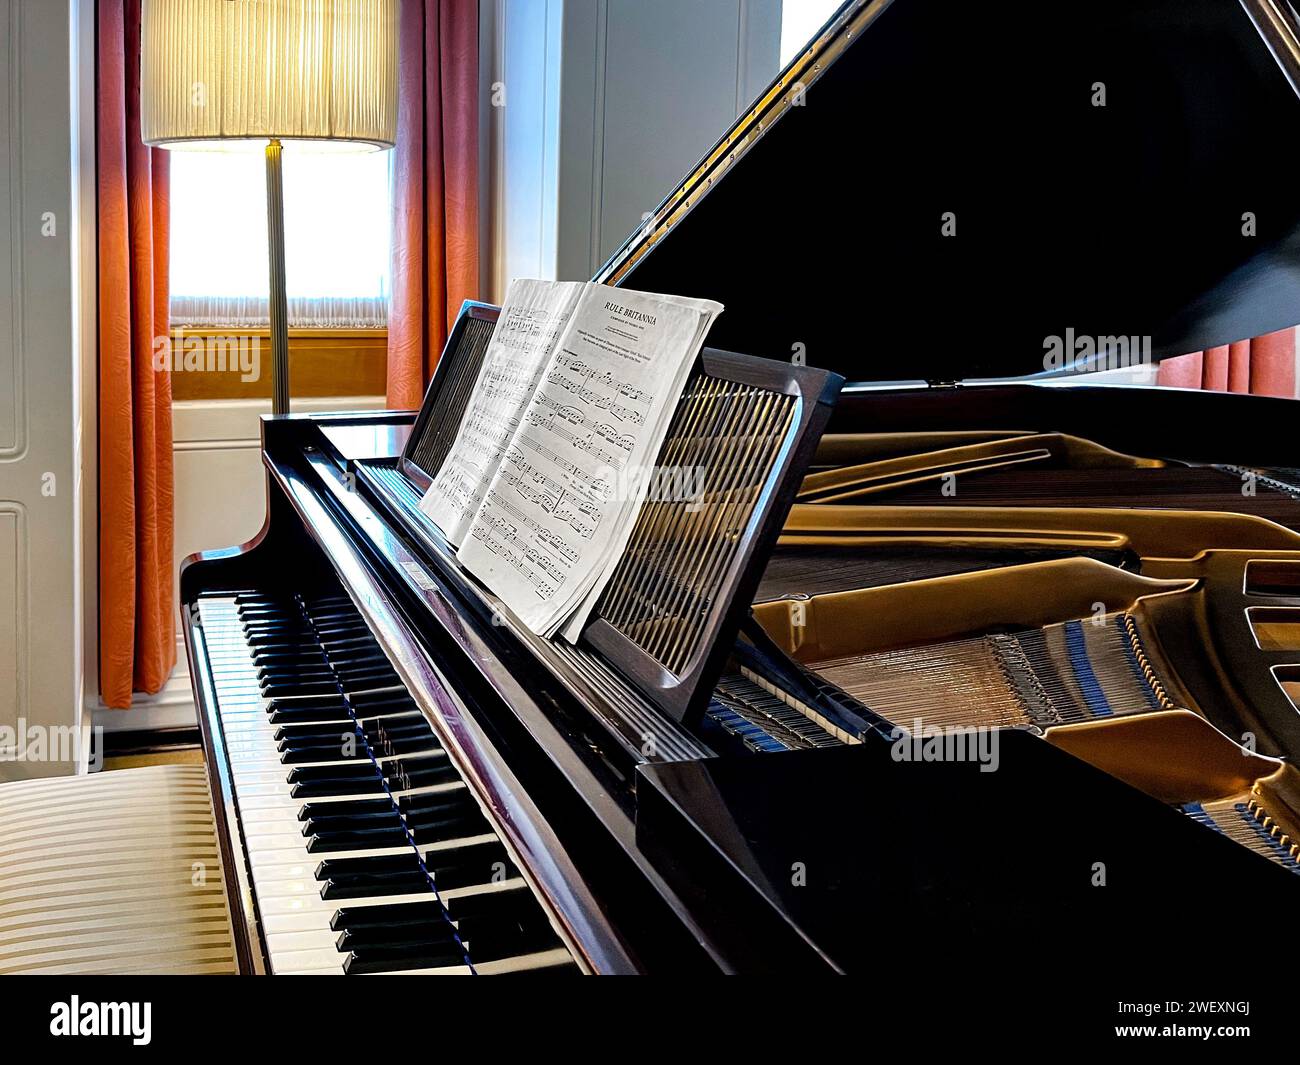 Rule Britannia Sheetmusic ruht auf Einem Wlmar-Klavier im Salon auf der Yacht Ihrer Majestät Britannia Stockfoto